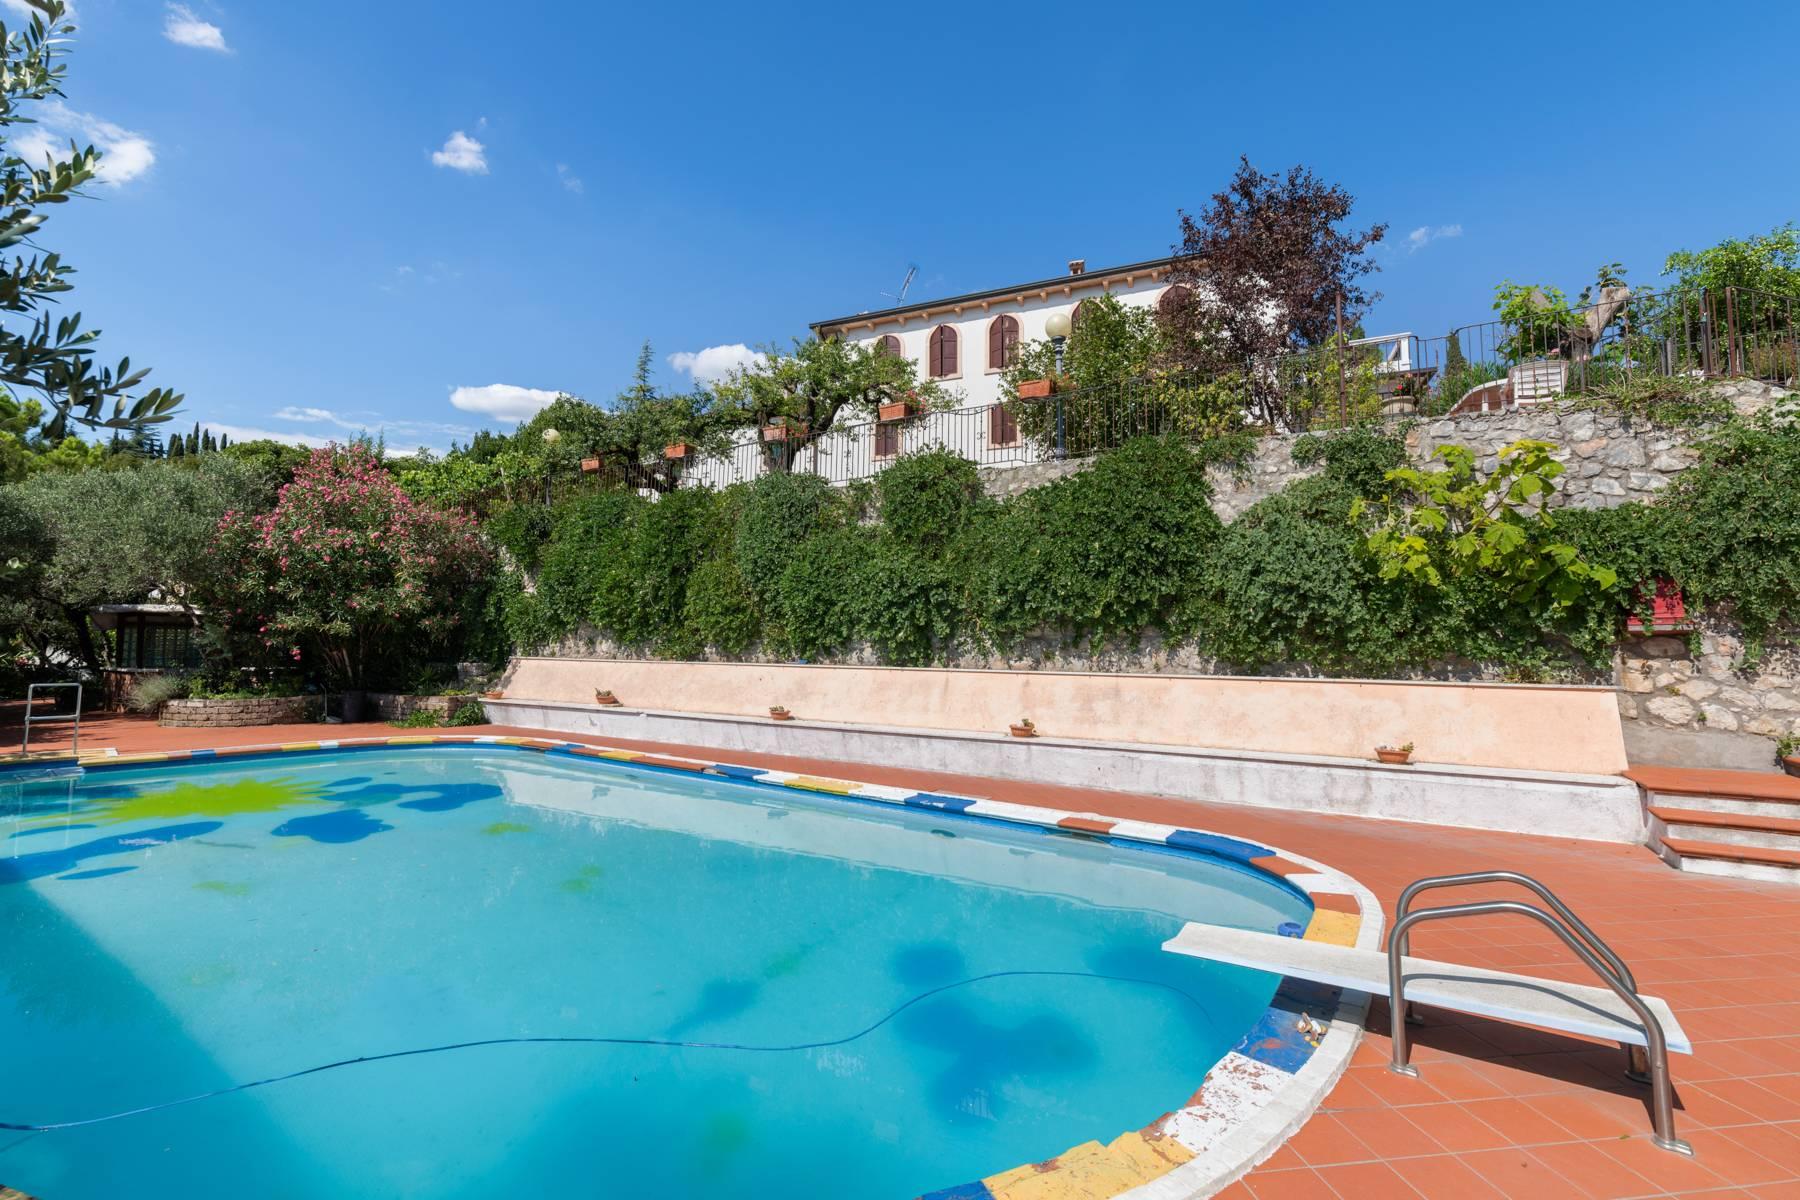 Villa de campagne historique avec piscine et court de tennis avec domaine dans les collines de Vérone - 4